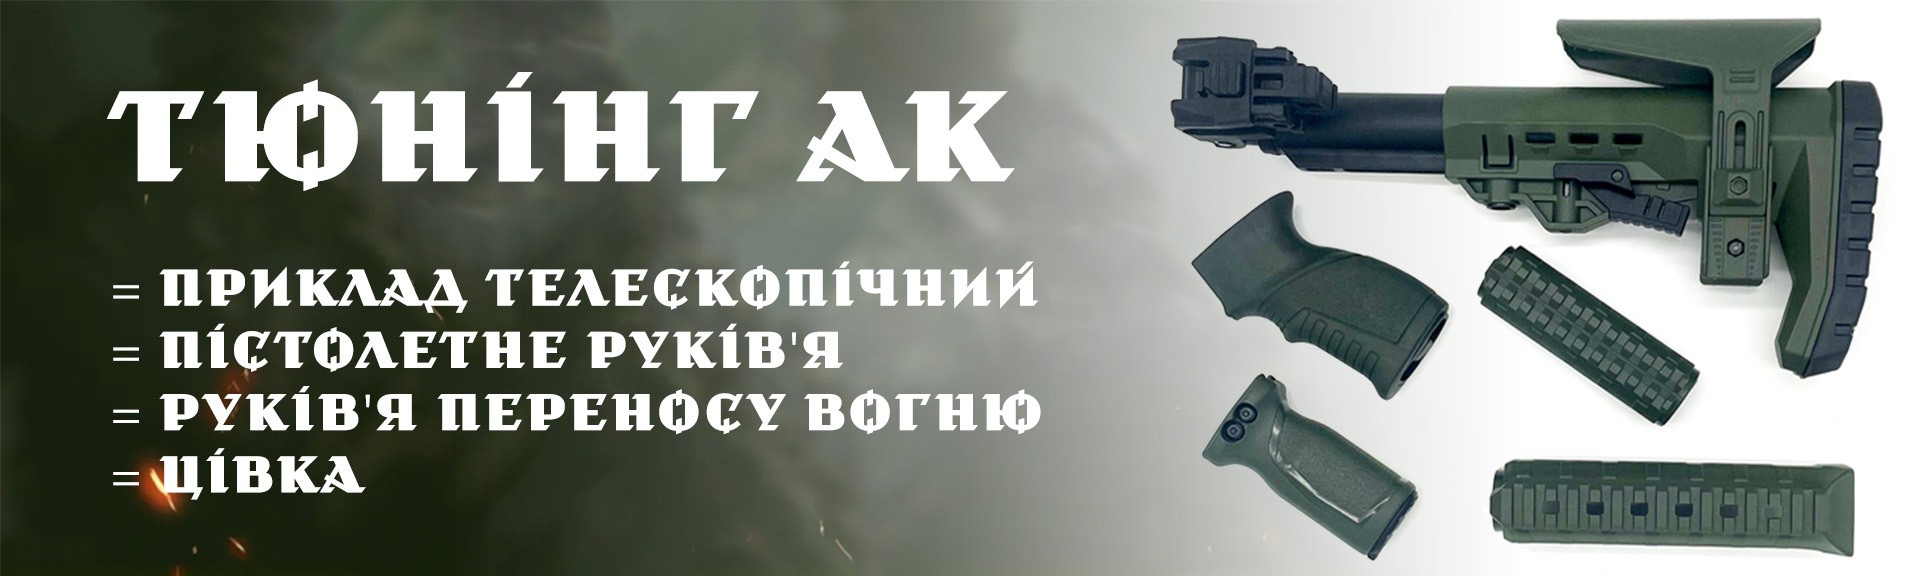 Обвіс на АК-74 АК-47 АКМ АКСУ